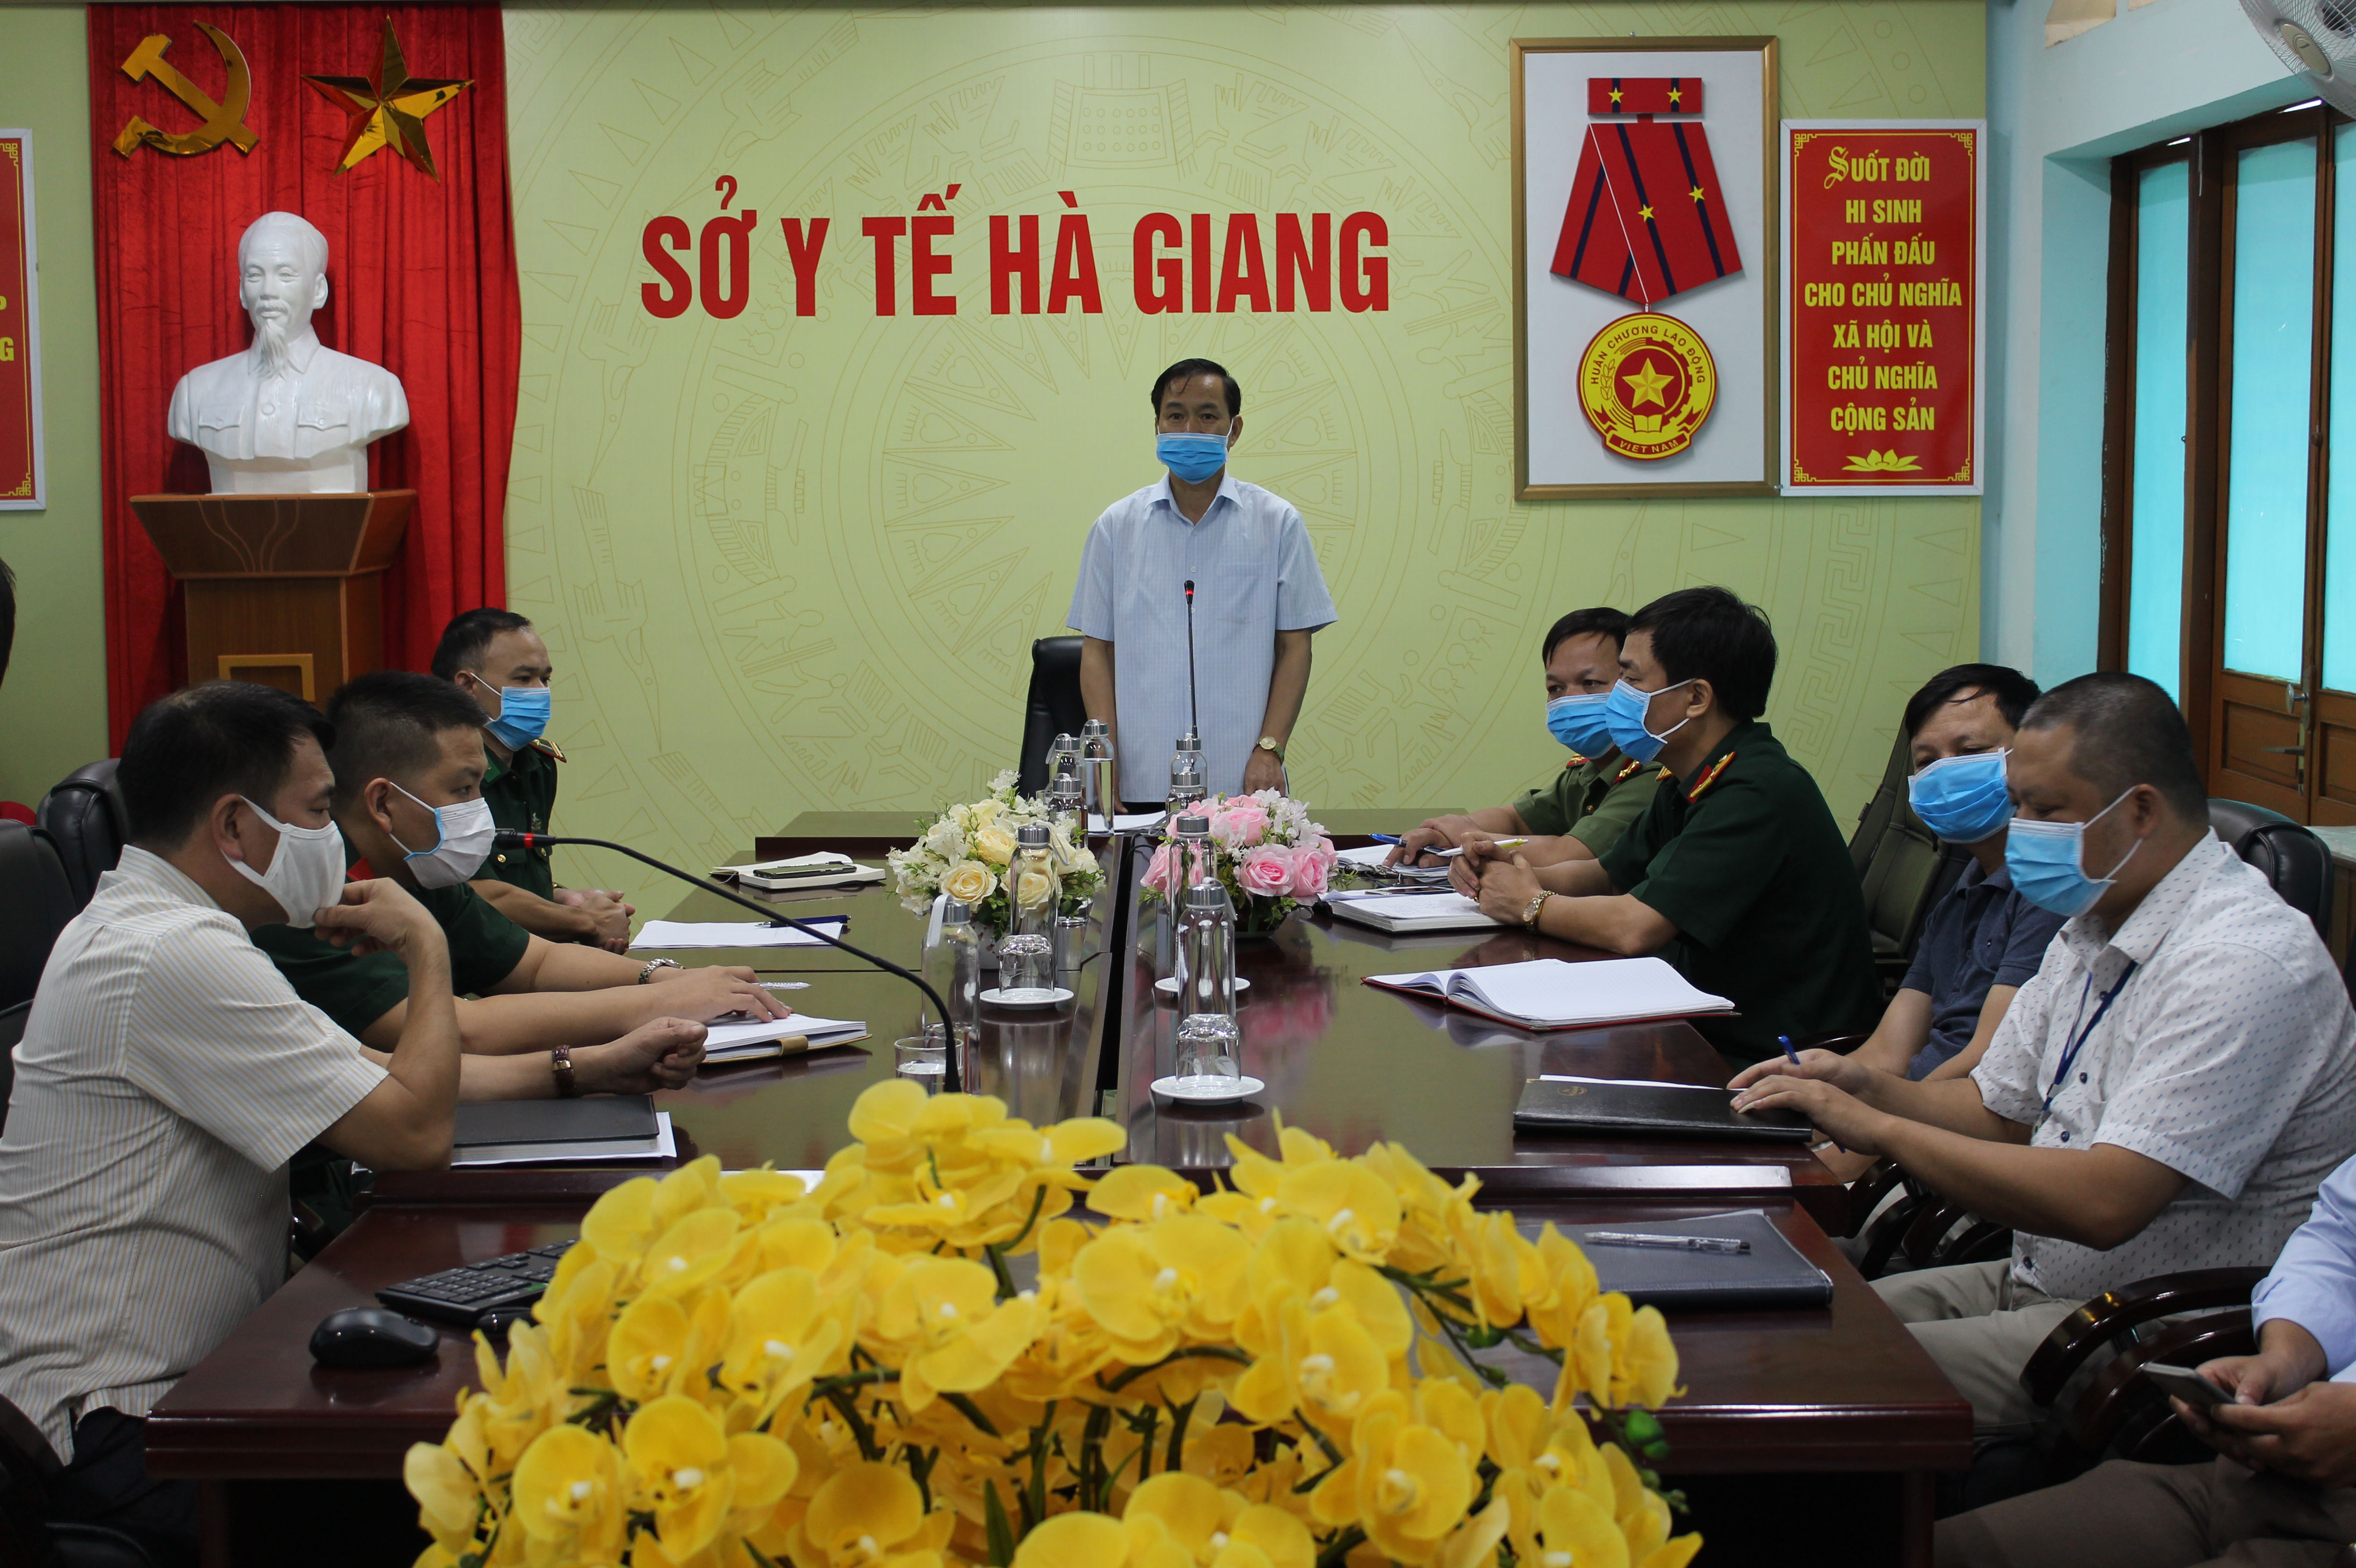 Đồng chí Nguyễn Đình Dích, Phó Giám đốc Sở Y tế phát biểu ý kiến chỉ đạo tại lớp tập huấn